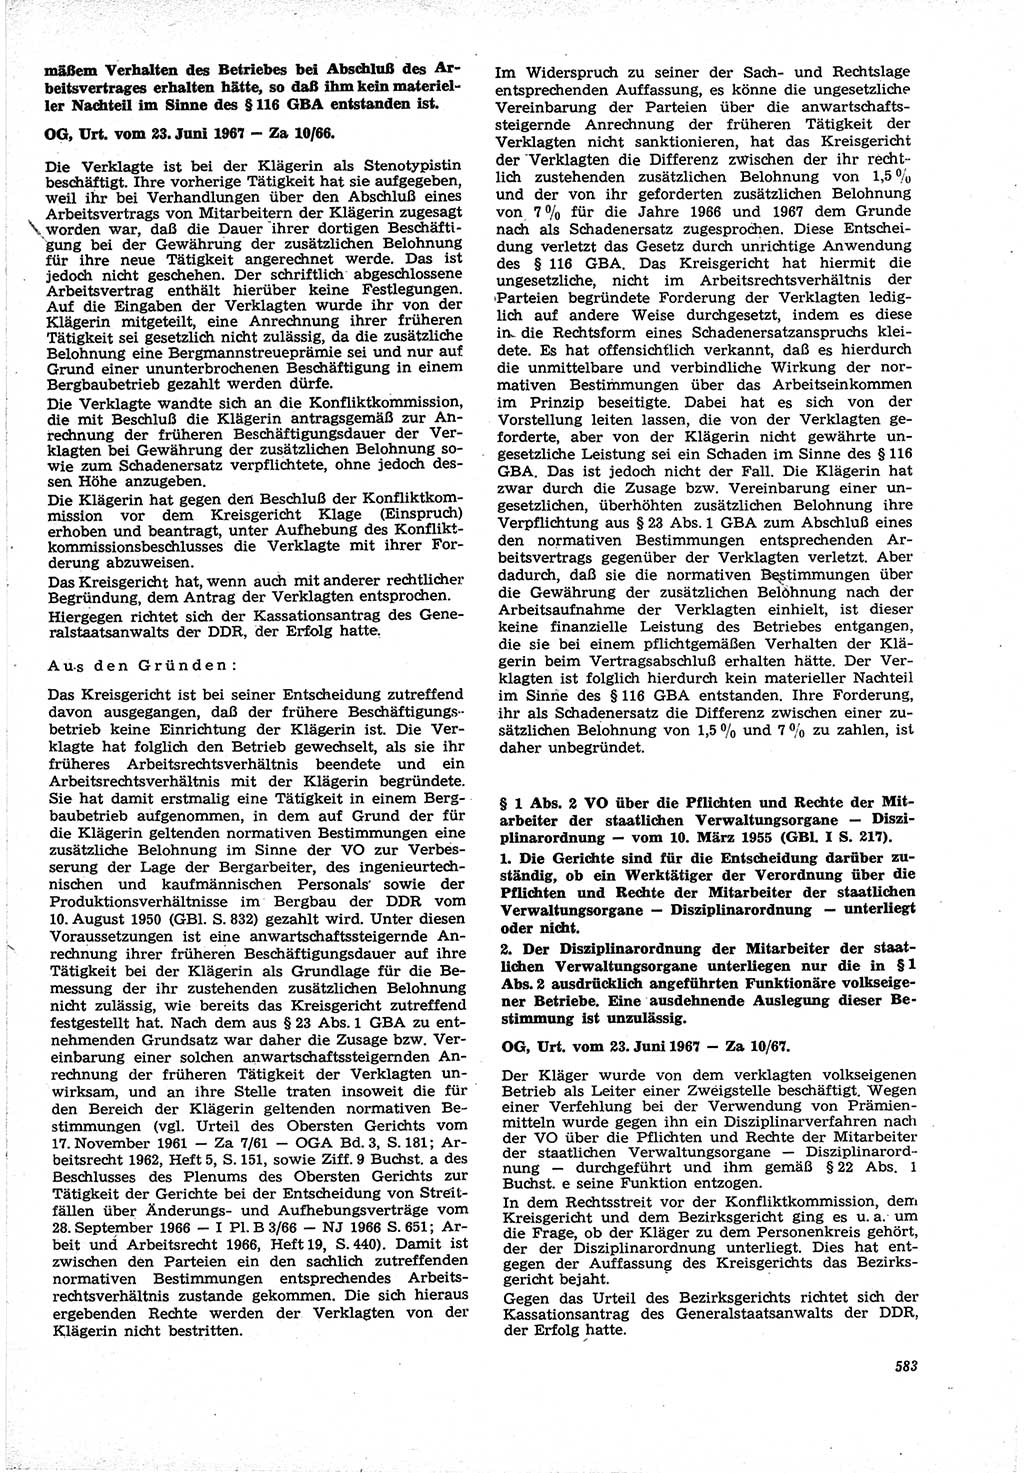 Neue Justiz (NJ), Zeitschrift für Recht und Rechtswissenschaft [Deutsche Demokratische Republik (DDR)], 21. Jahrgang 1967, Seite 583 (NJ DDR 1967, S. 583)